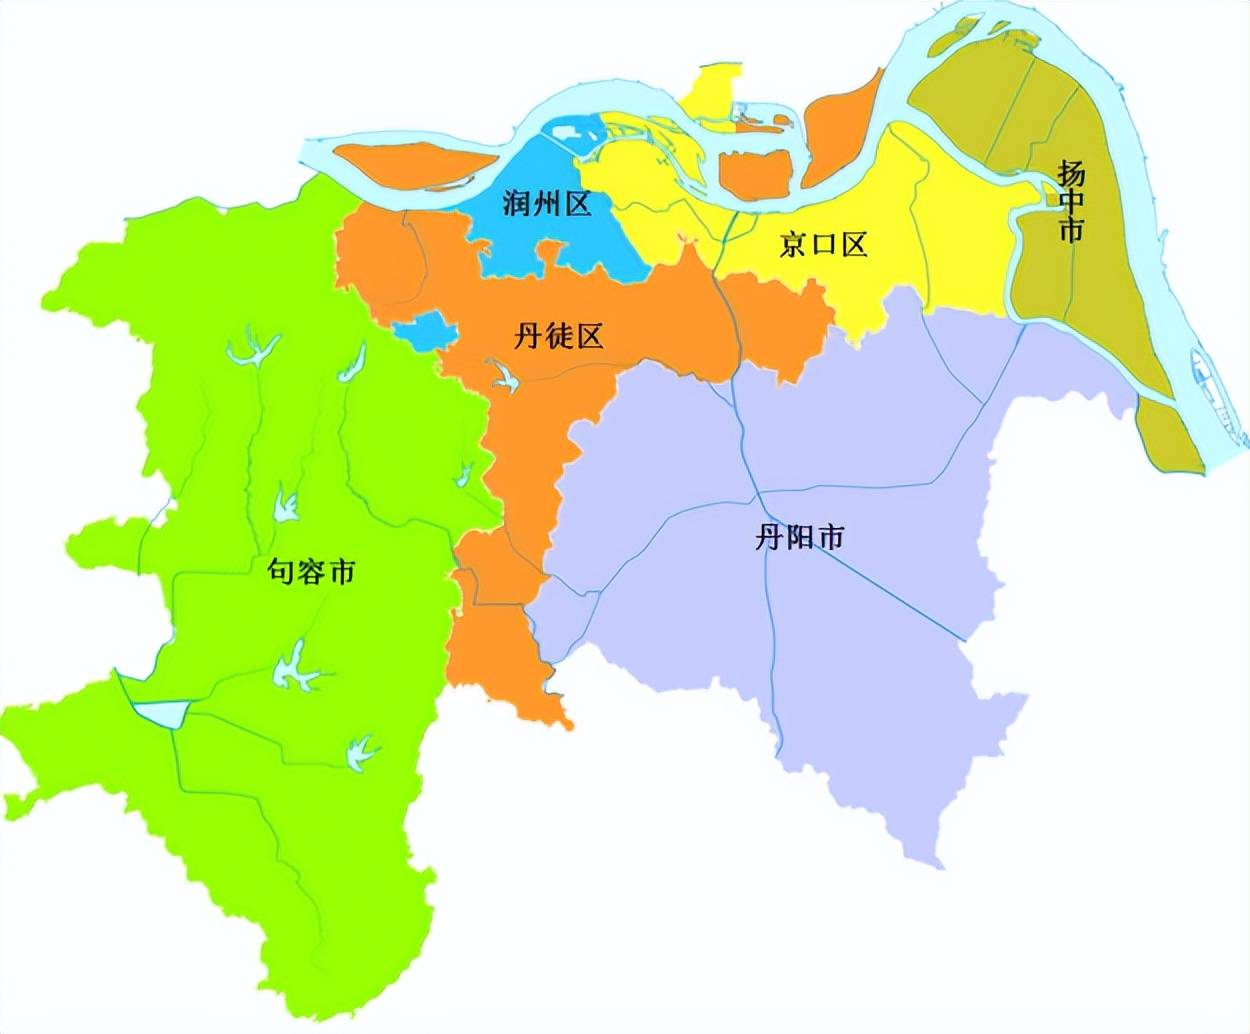 江苏省的区划变动13个地级市之一镇江市为何有6个区县